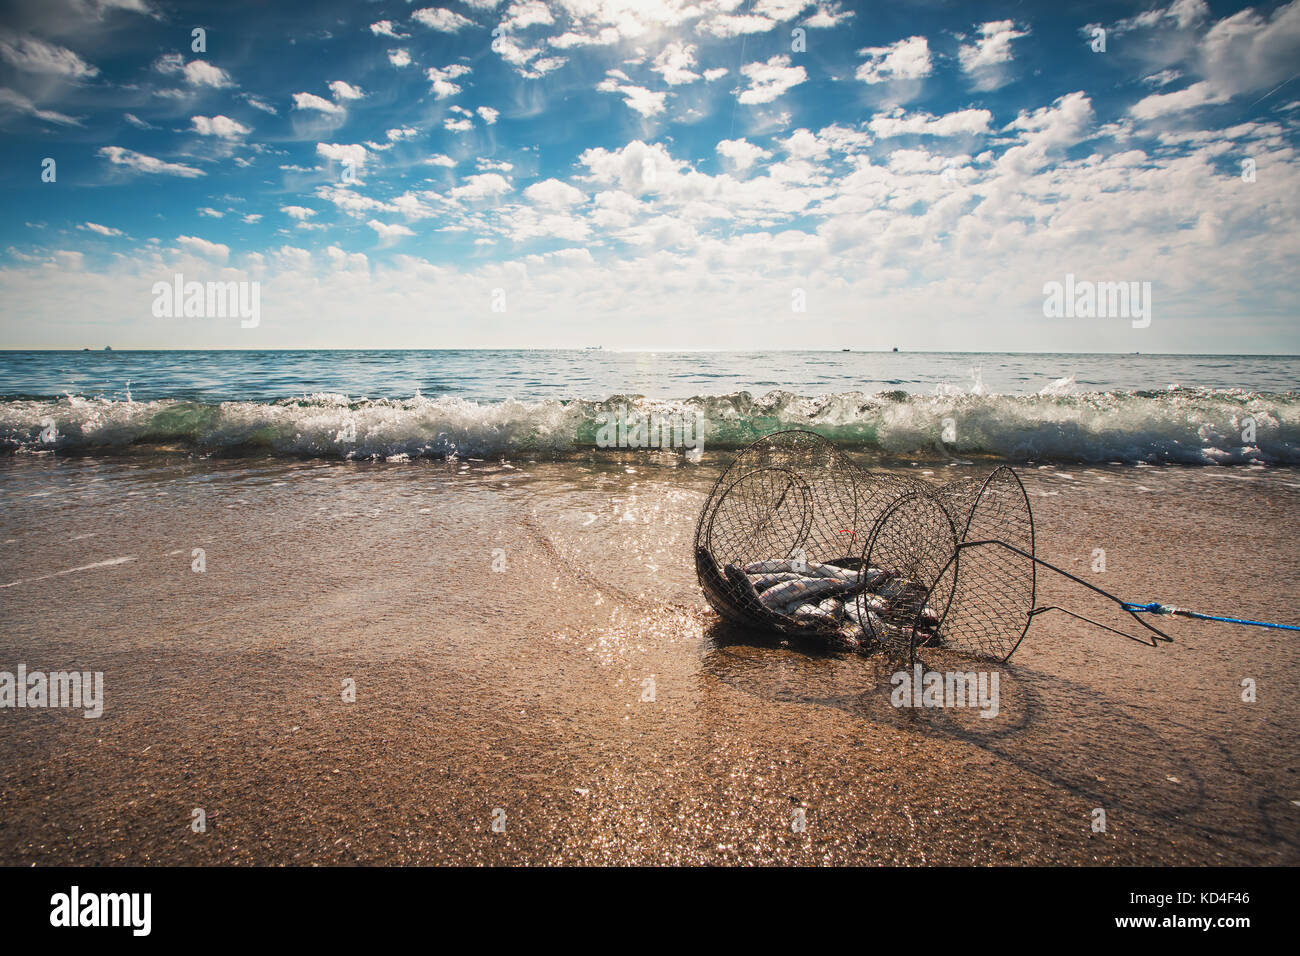 Fischernetz coop Trap, einer schwimmenden Korb für lebende Fische im Wasser. Stockfoto